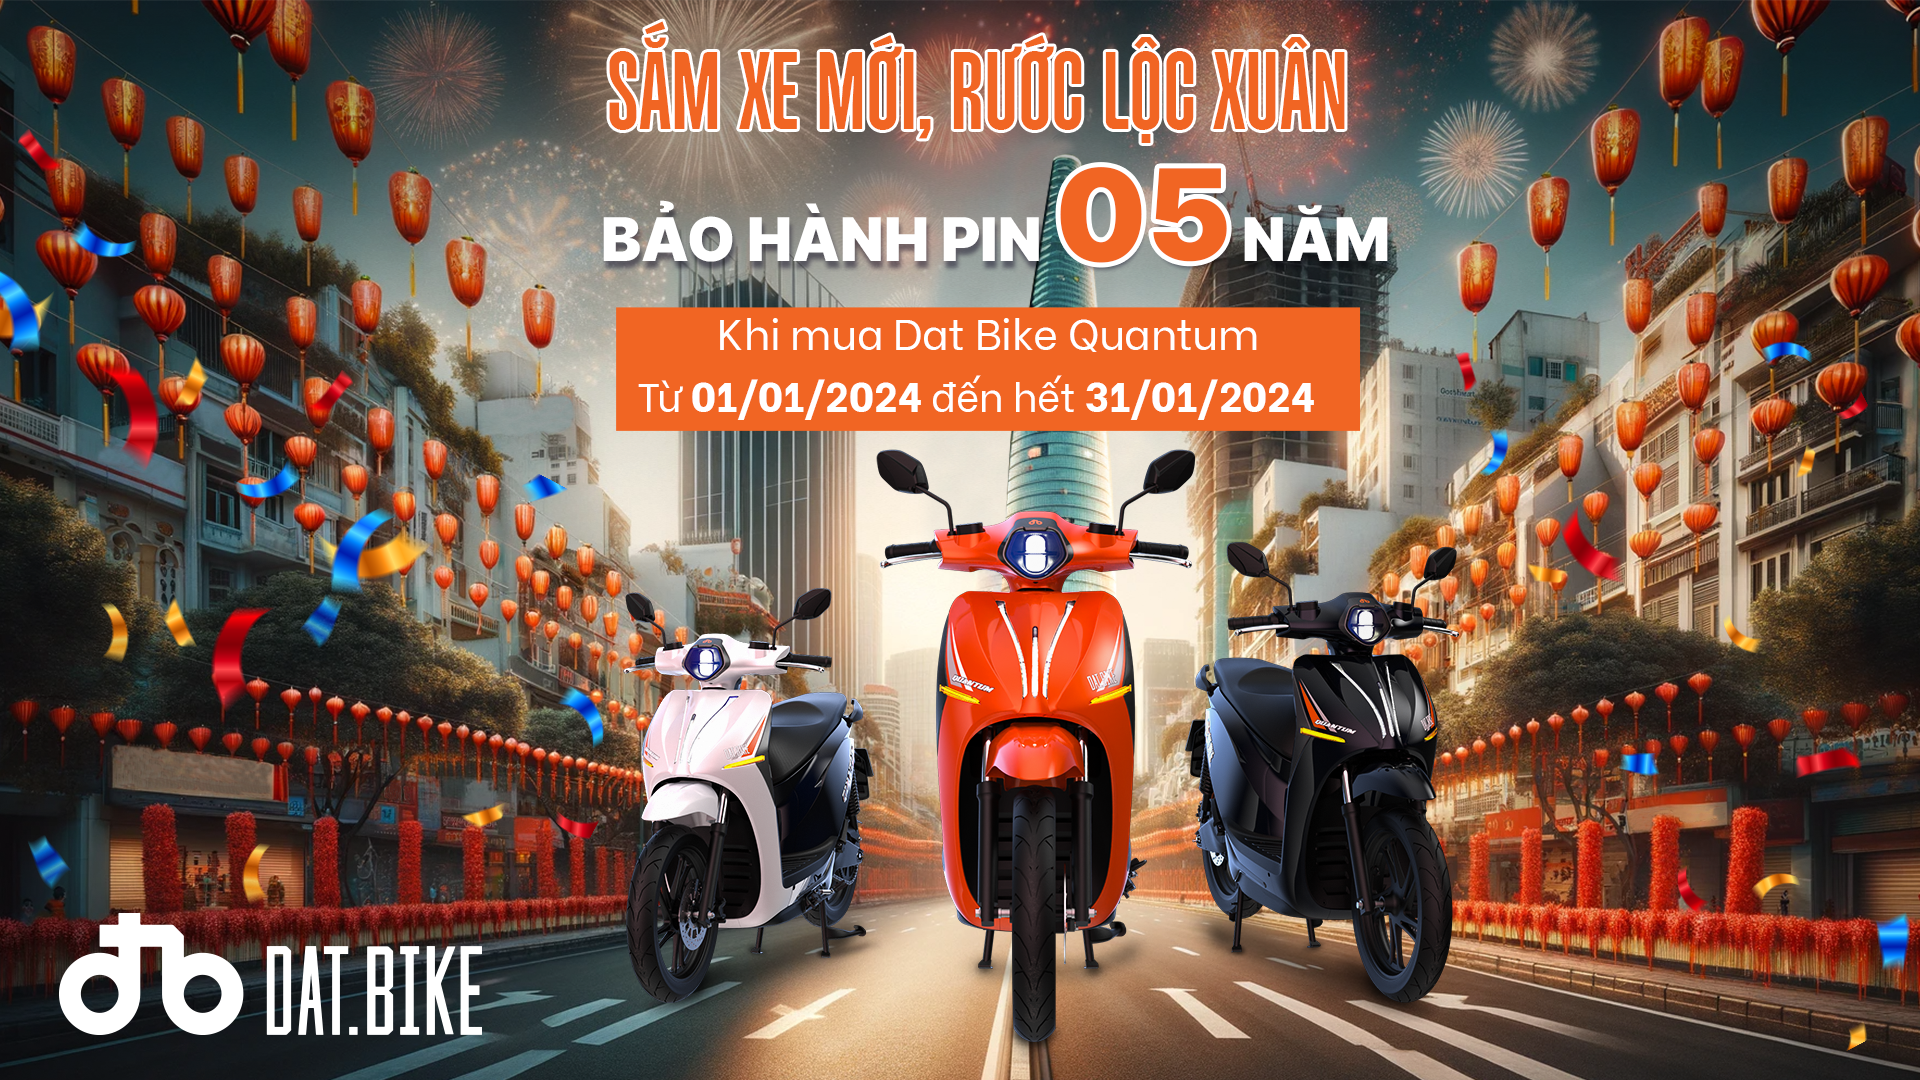 Dat Bike ra mắt chương trình “Sắm xe mới, rước lộc xuân” từ 01/01 - hết 31/01/2024